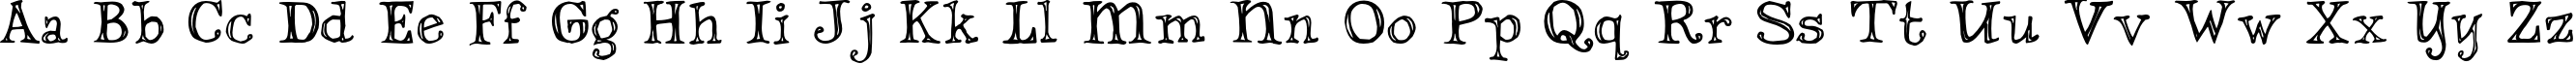 Пример написания английского алфавита шрифтом Dannette Outline